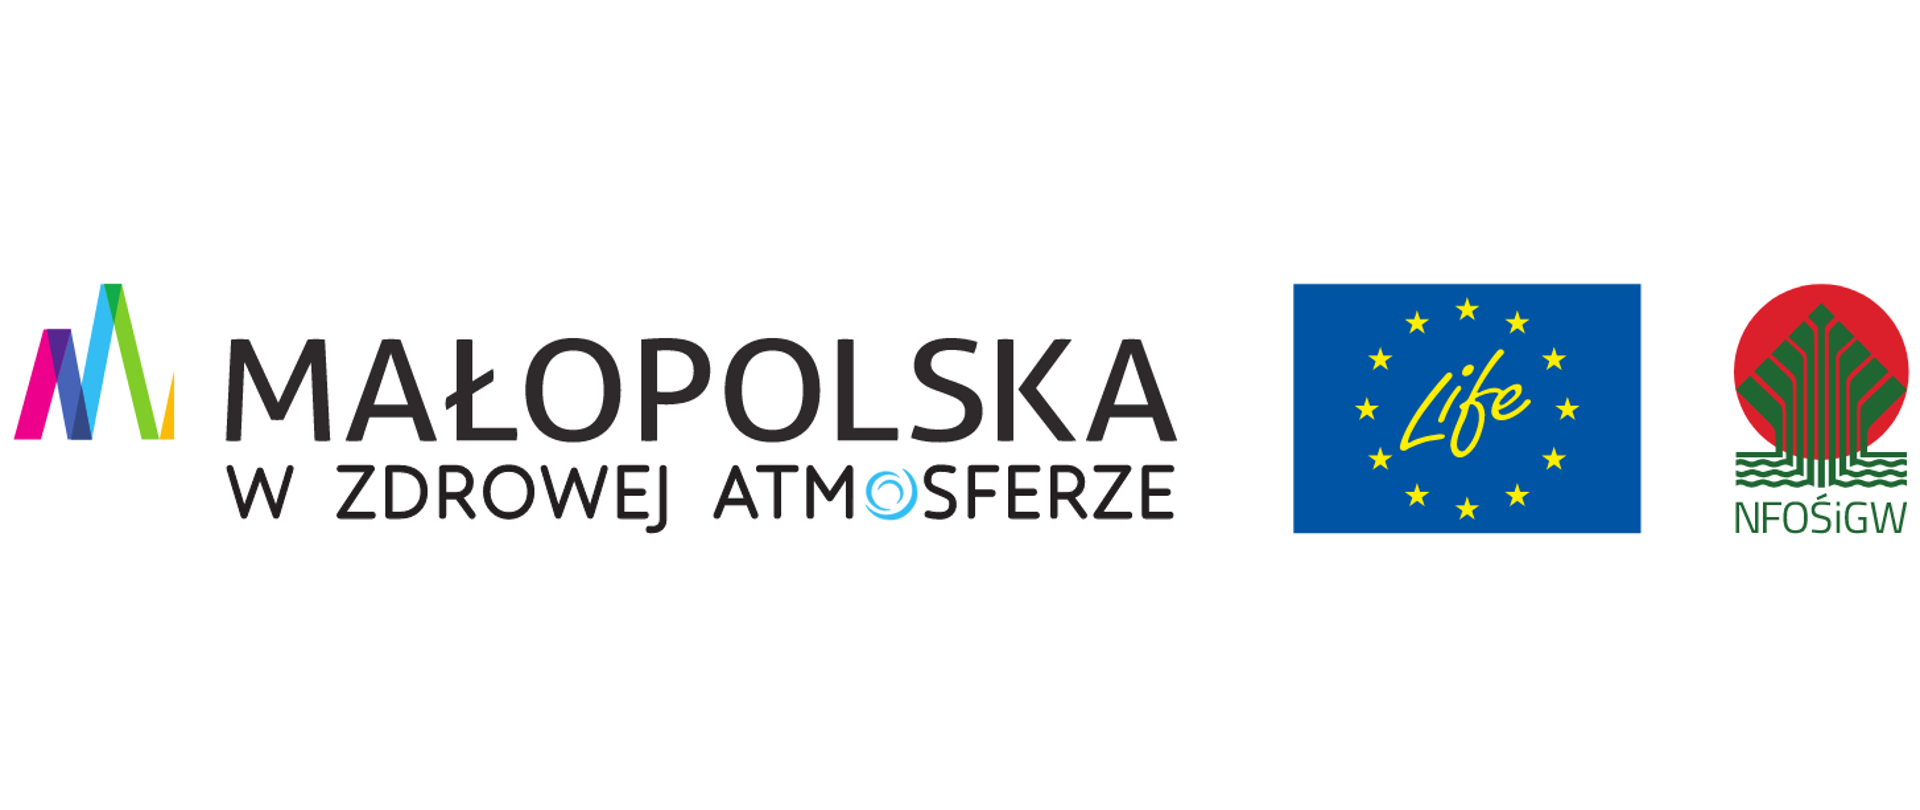 Logo Małopolski wraz z logo programu life (Żółty napis na niebieskim tle) oraz narodowego Funduszu Ochrony Środowiska i Gospodarki Wodnej (skrót NFOŚiGW napisany zielonymi literami)